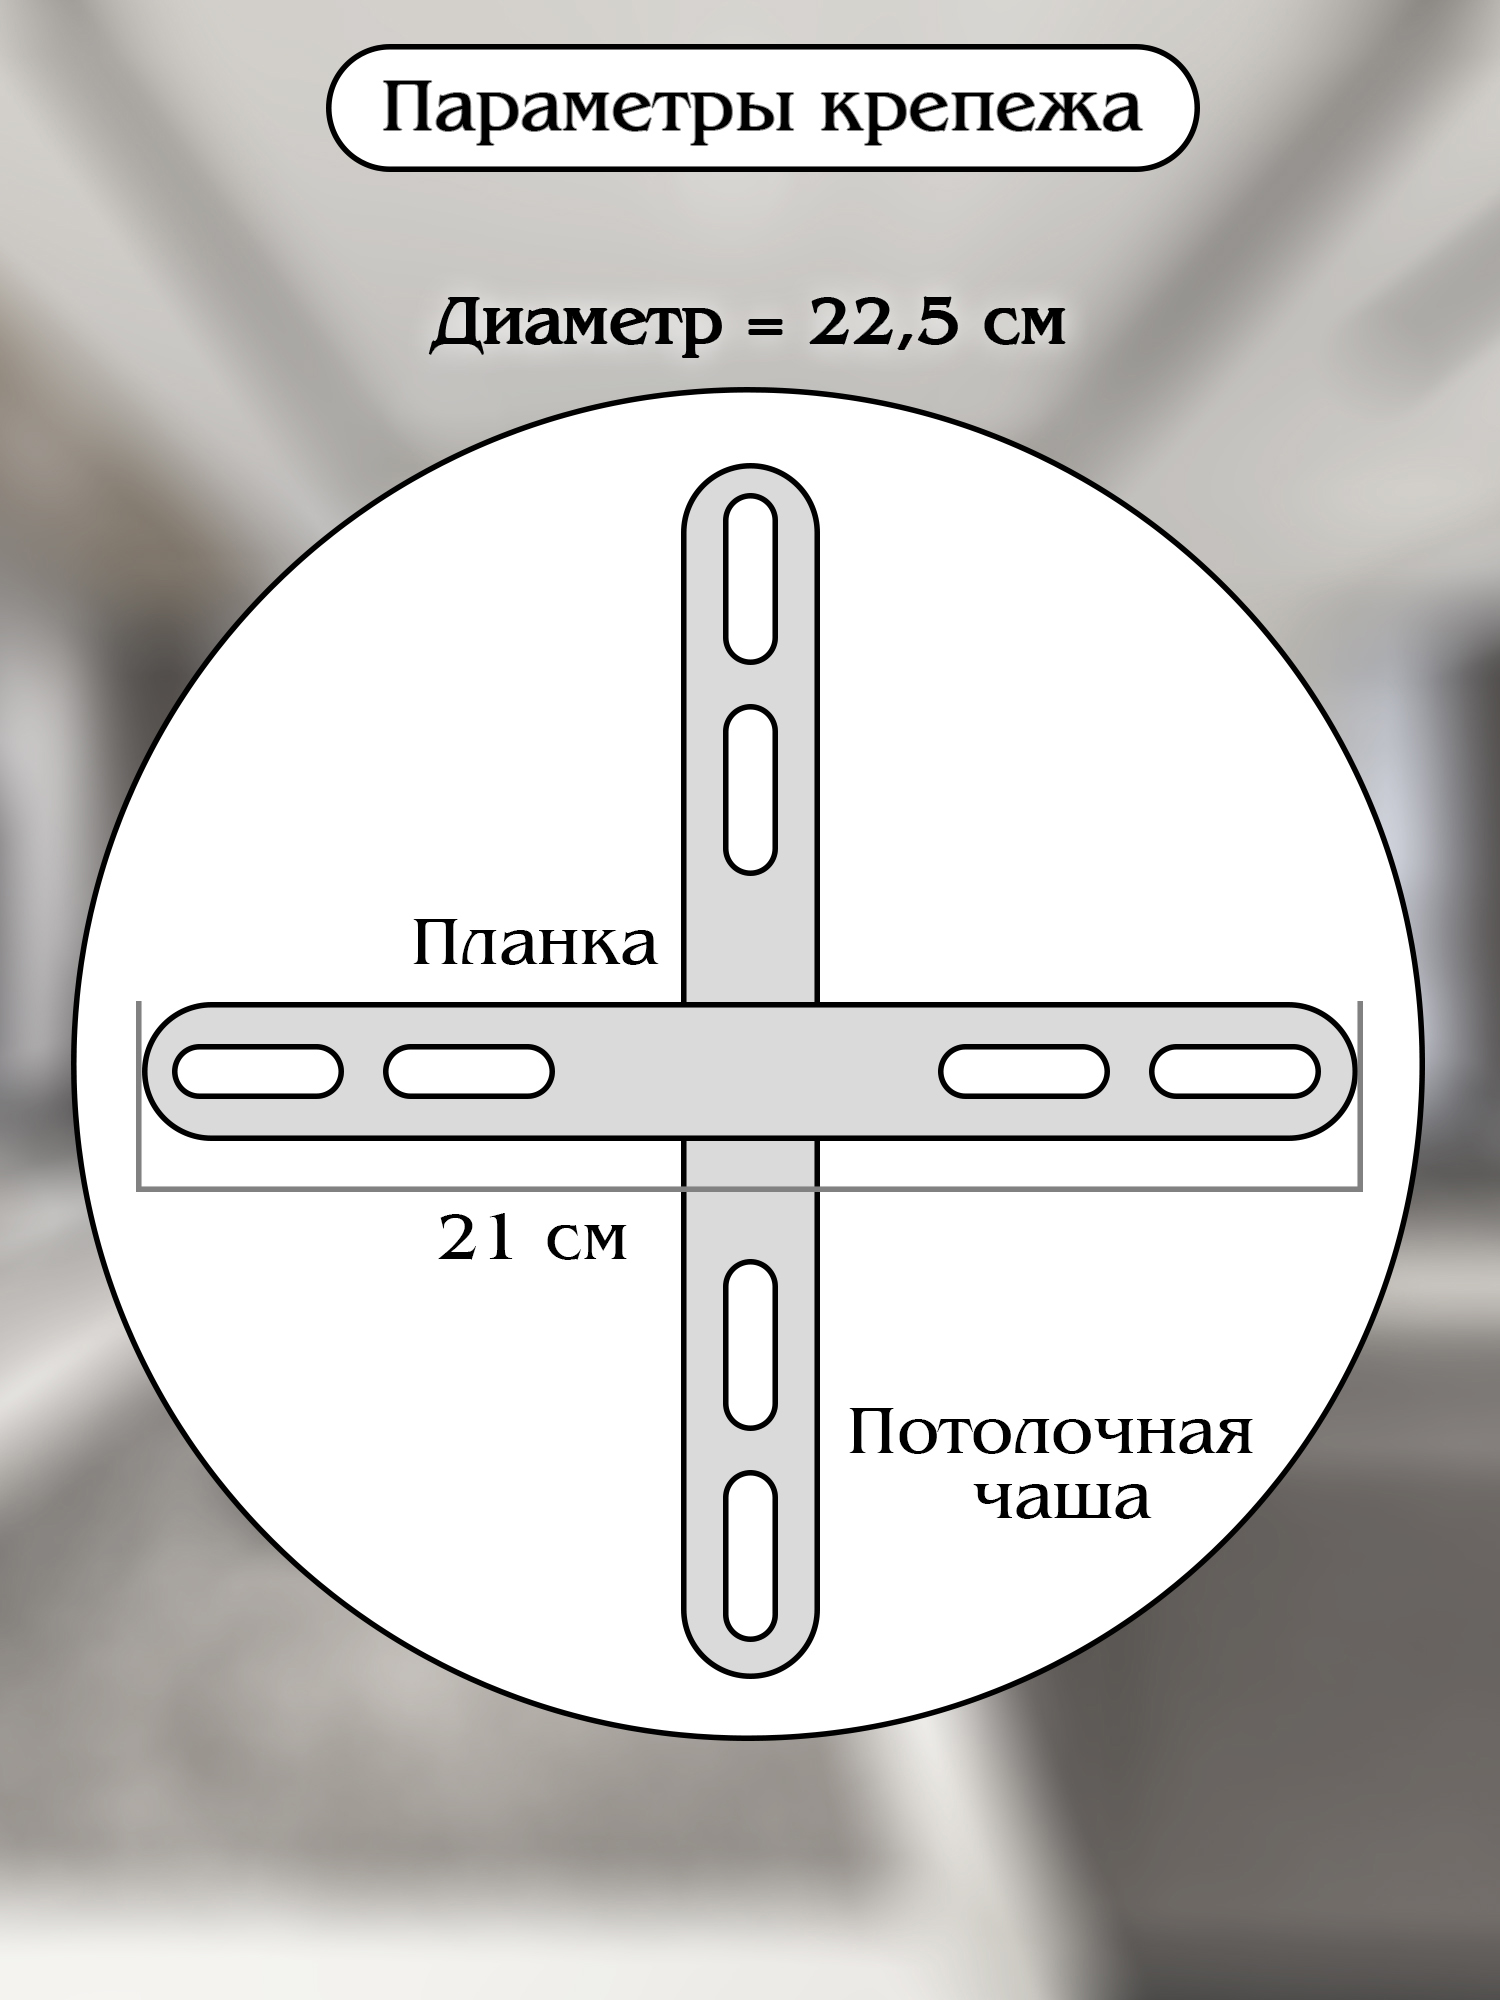 Светодиодный светильник NATALI KOVALTSEVA люстра тройной нимб 160W белый LED - фото 8